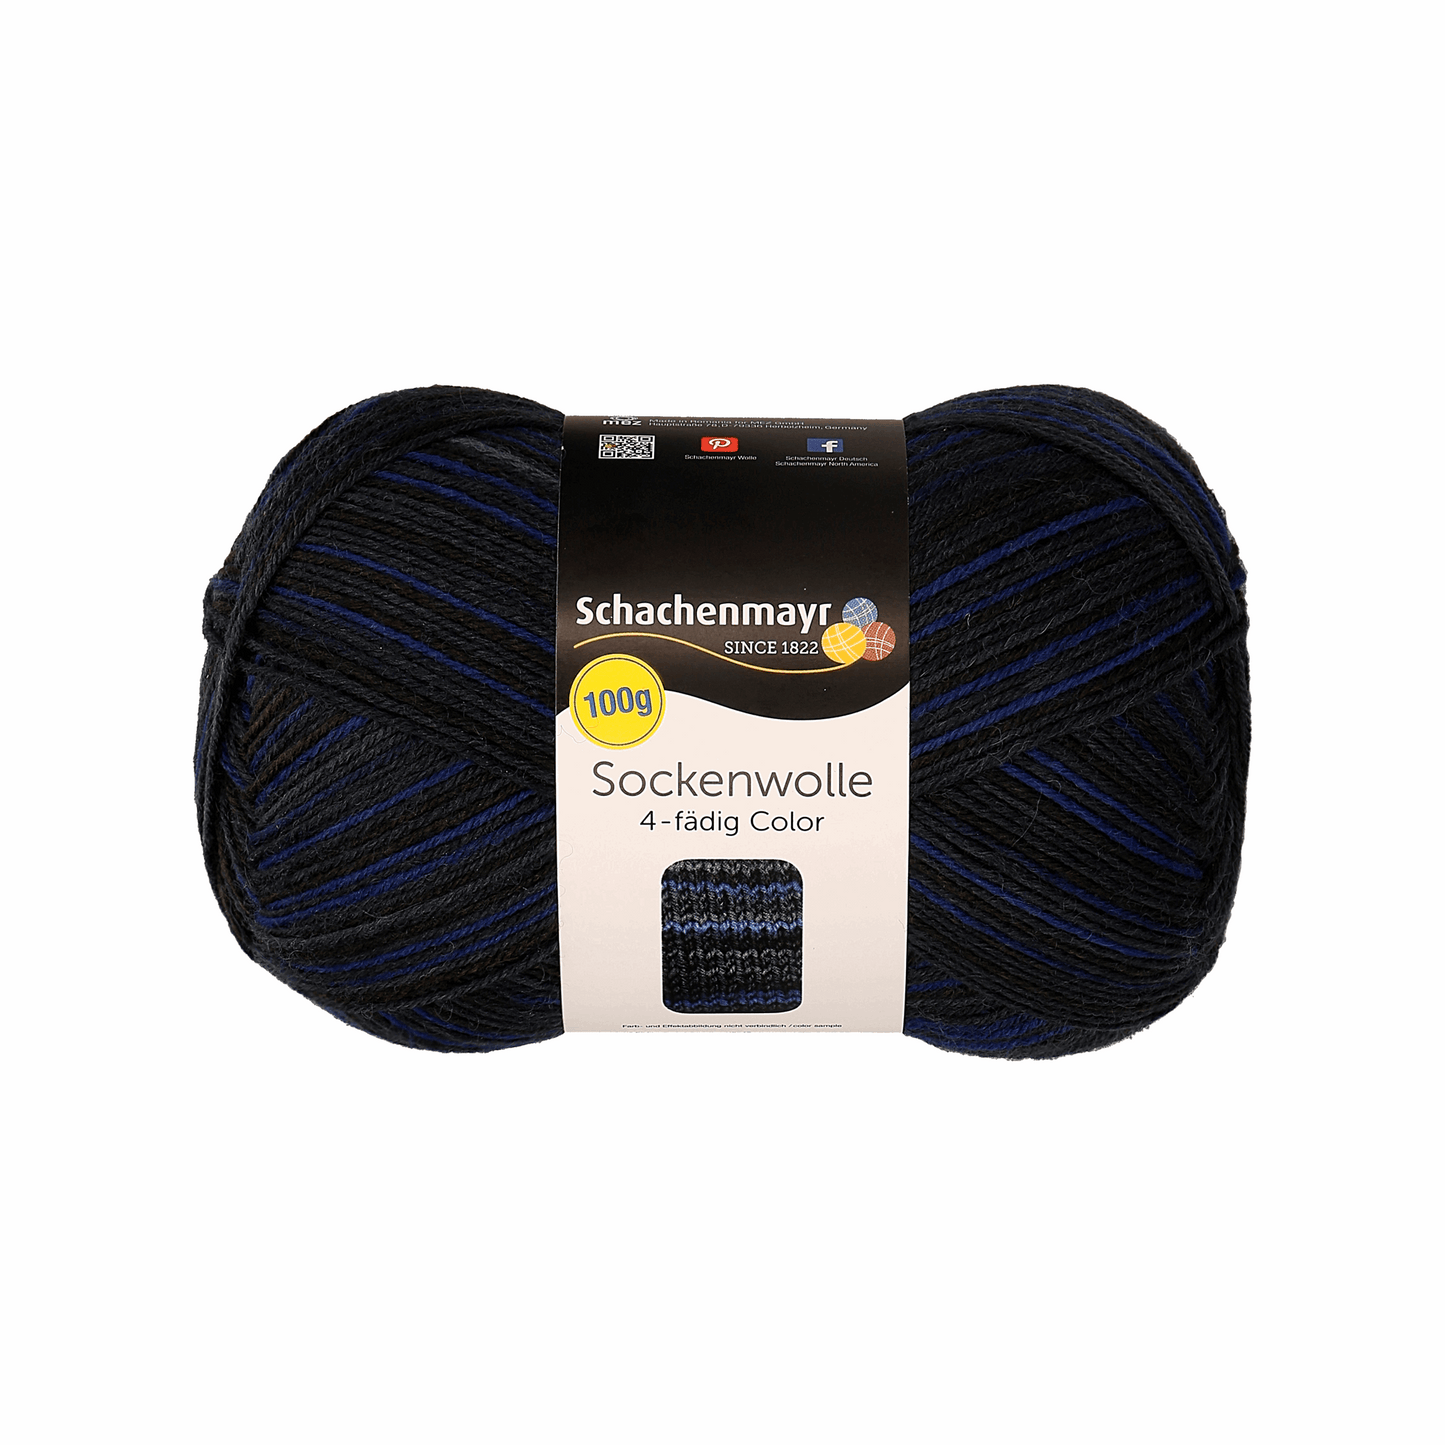 Schachenmayr Sockenwolle Color 100g, 97132, Farbe mitternacht 183